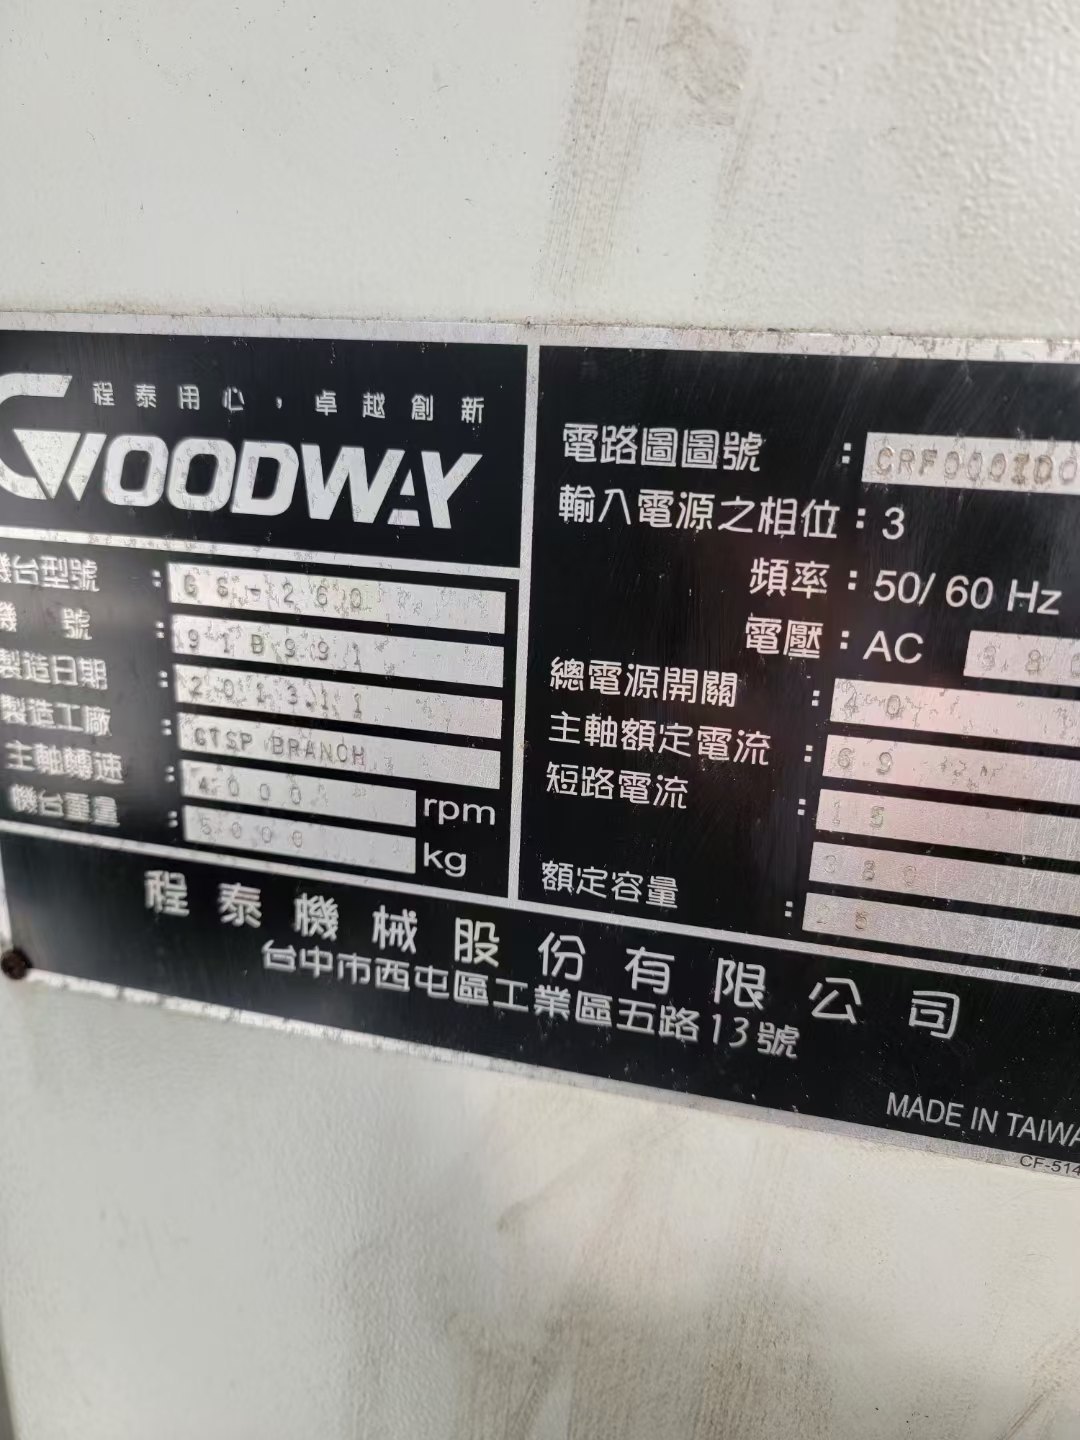 原装台湾进口程泰GS-260数控车床、10寸卡盘、伺服12工.